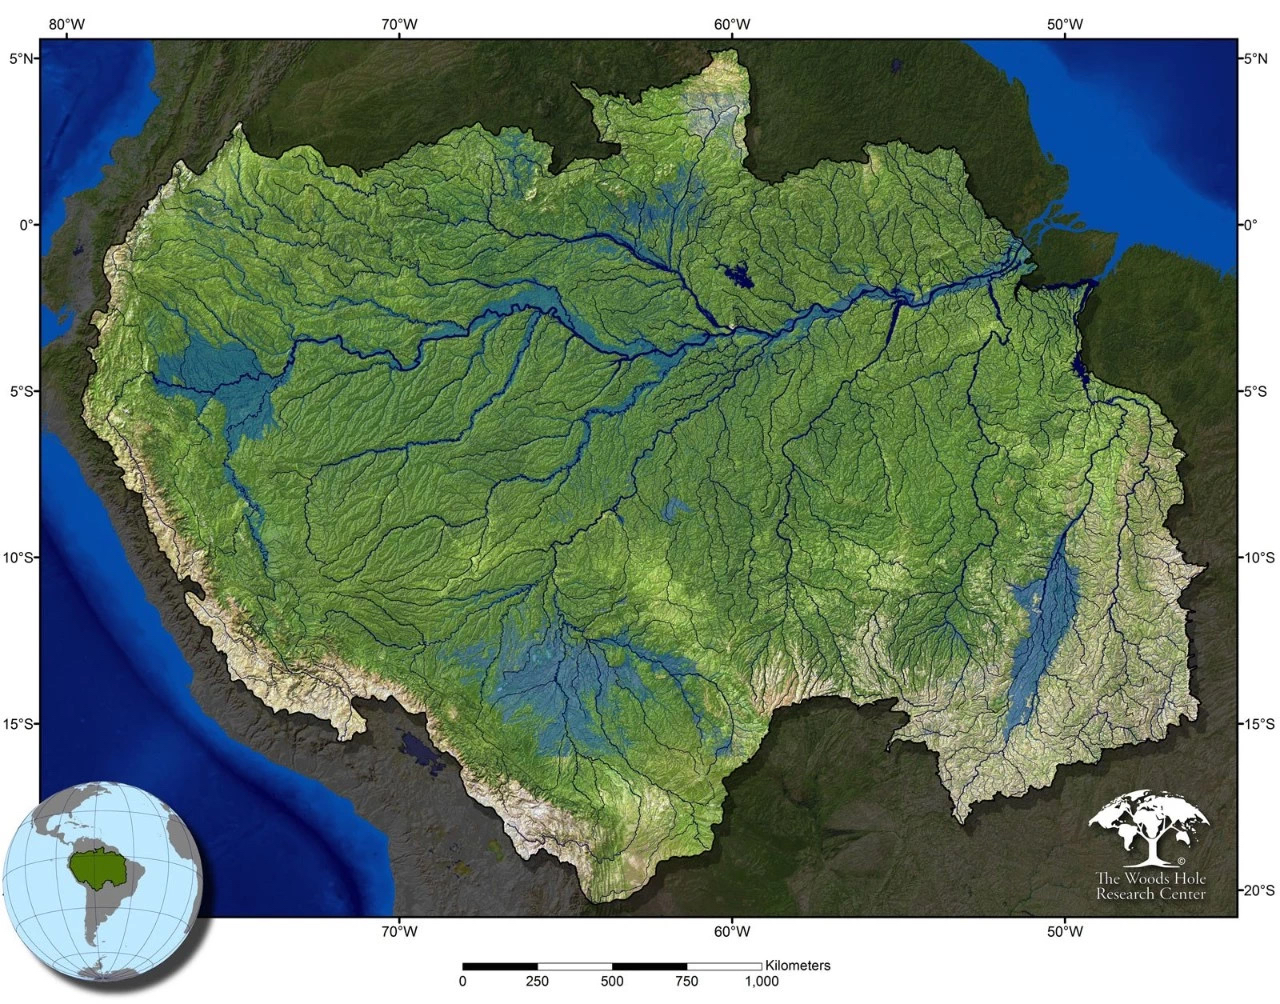 ③放射状水系:河流在穹形山地或火山地区,从高处顺坡流向四周低地,呈